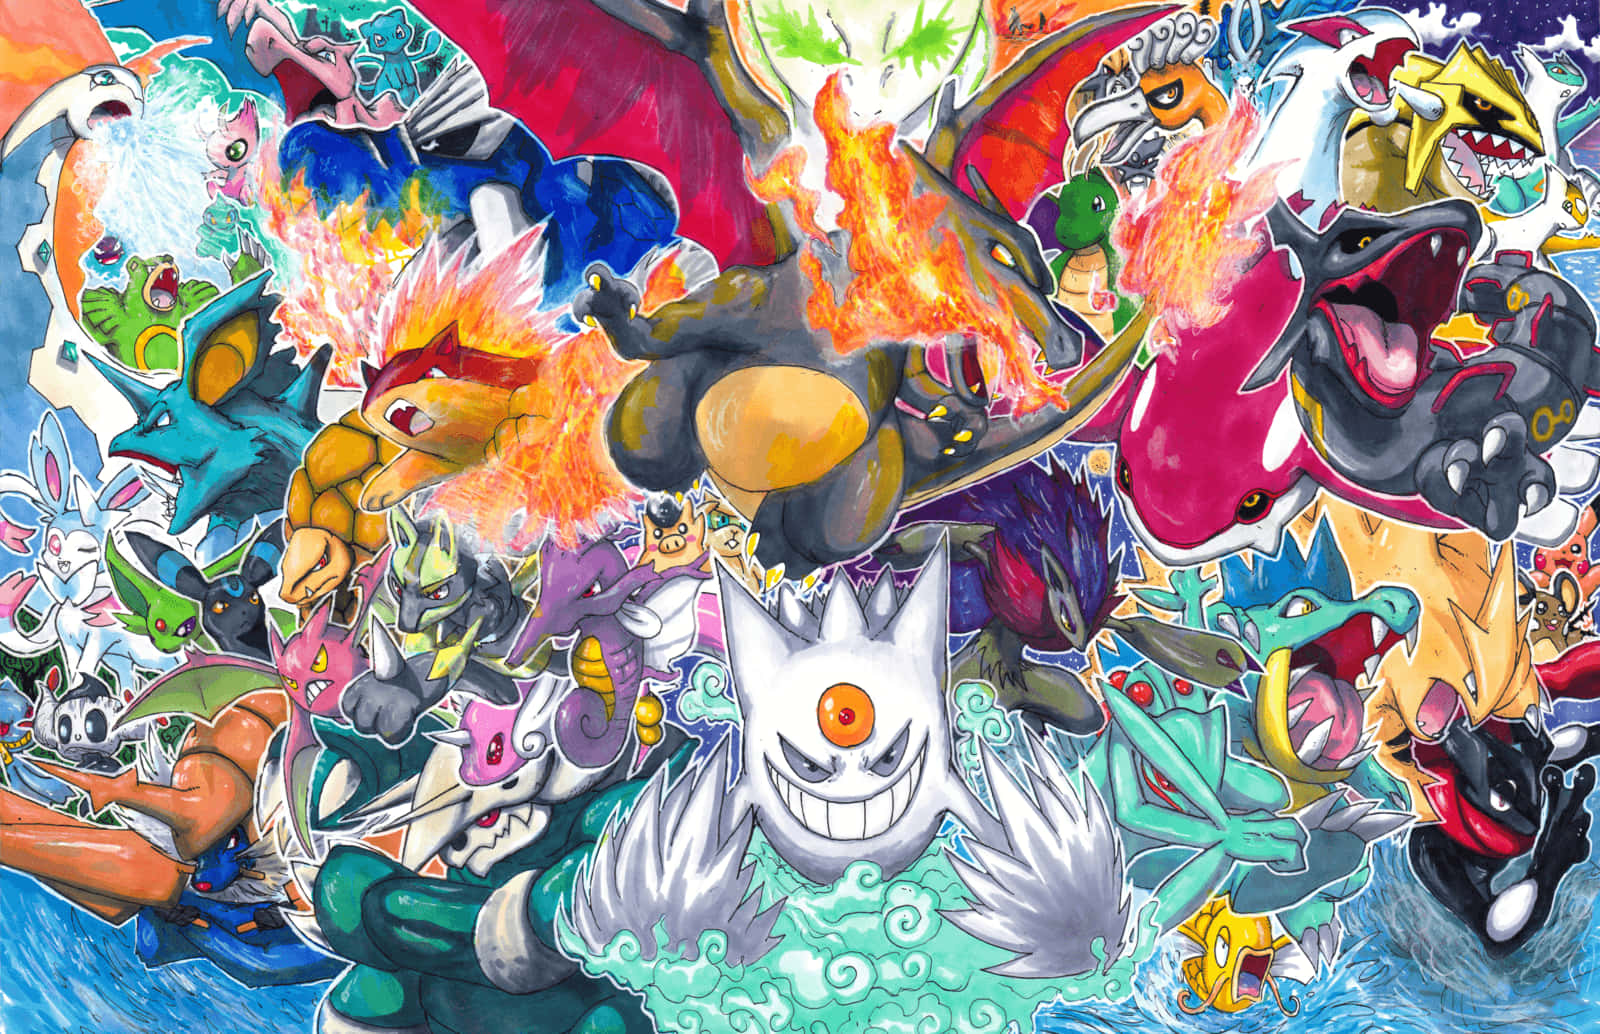 Fantastisktglänsande Pokémon Bakgrundsbild Illustration.